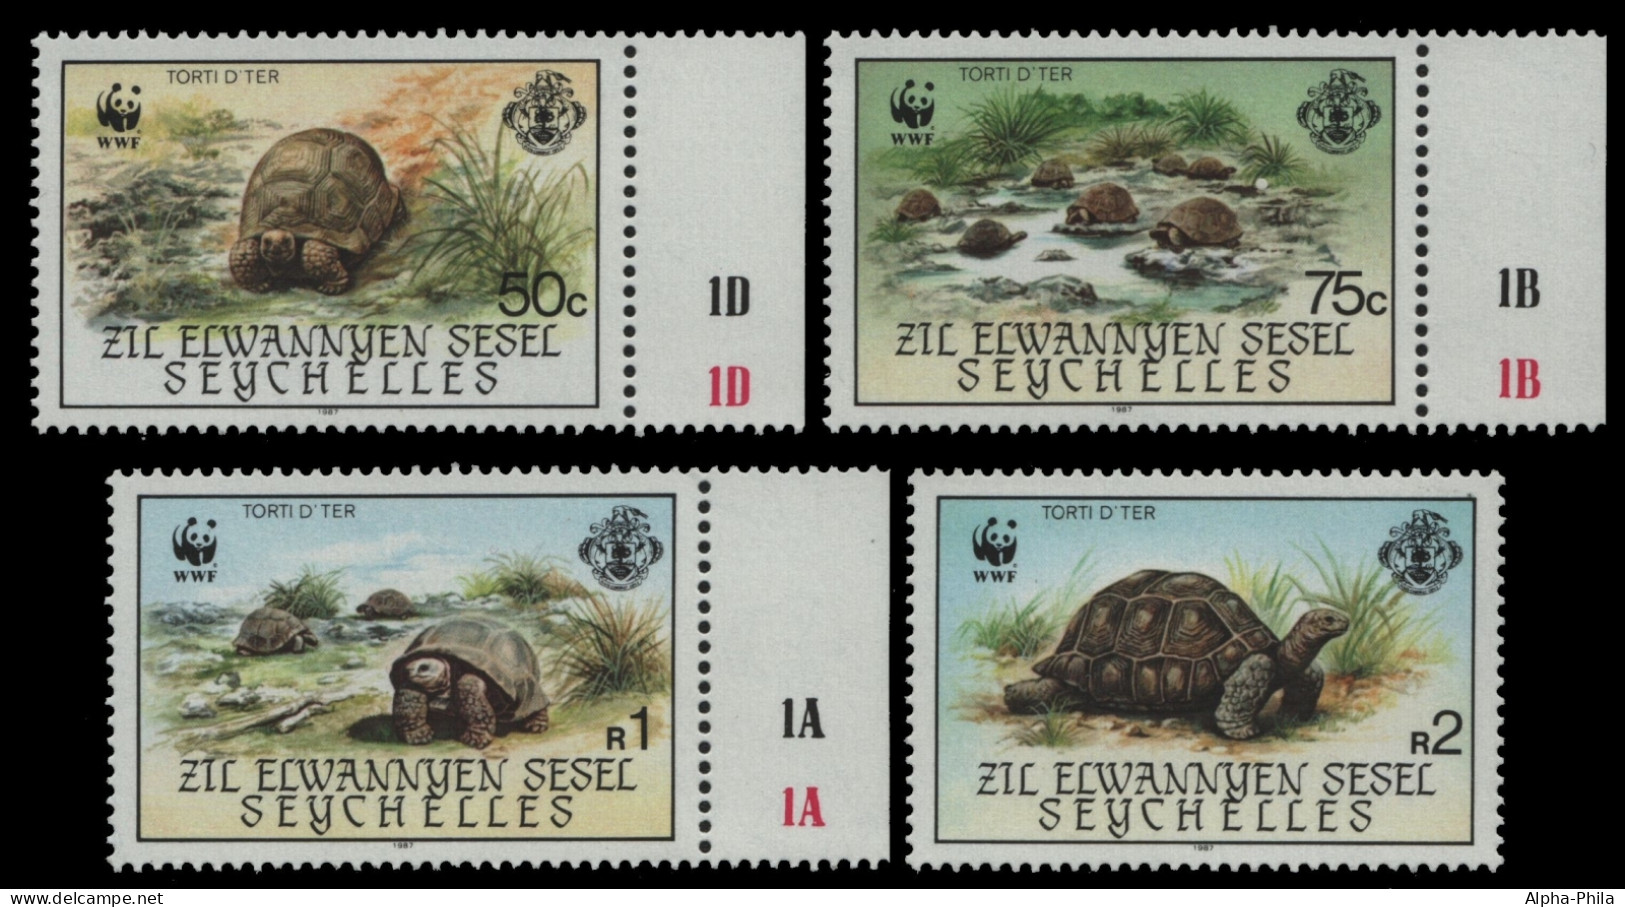 Äußere Seychellen 1987 - Mi-Nr. 137-140 ** - MNH - Schildkröte / Tortoise (III) - Seychelles (1976-...)